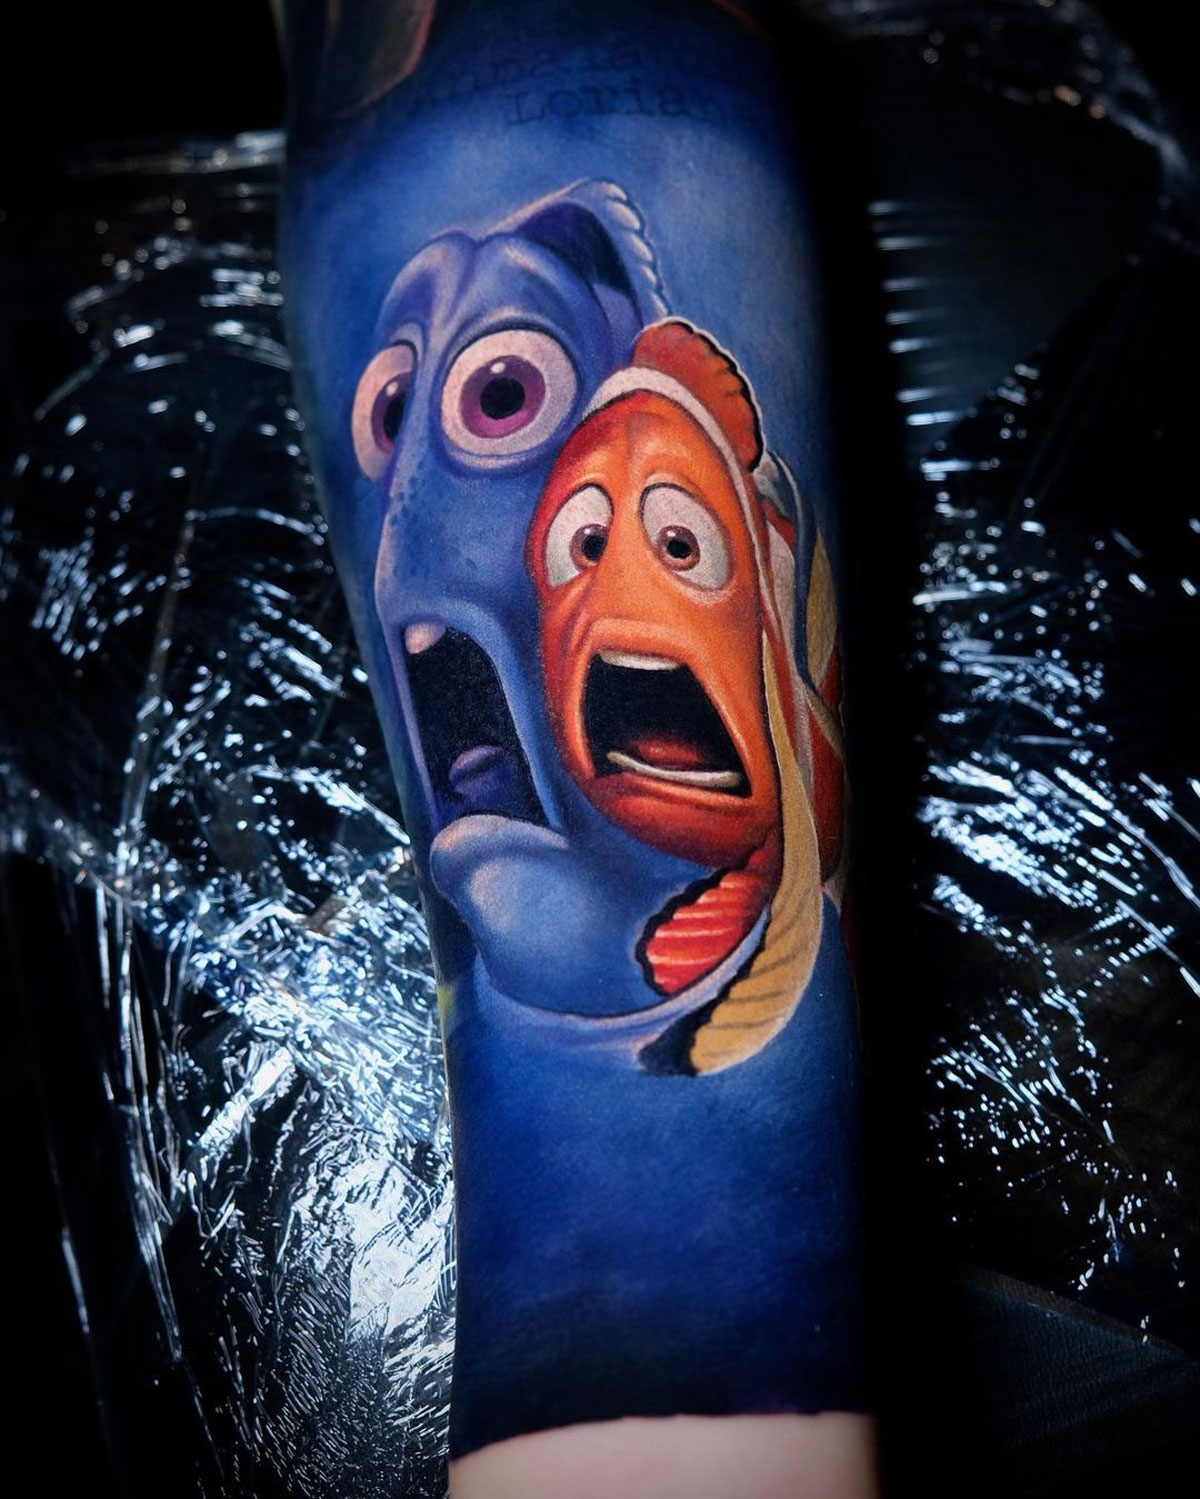 Nemo & Dory